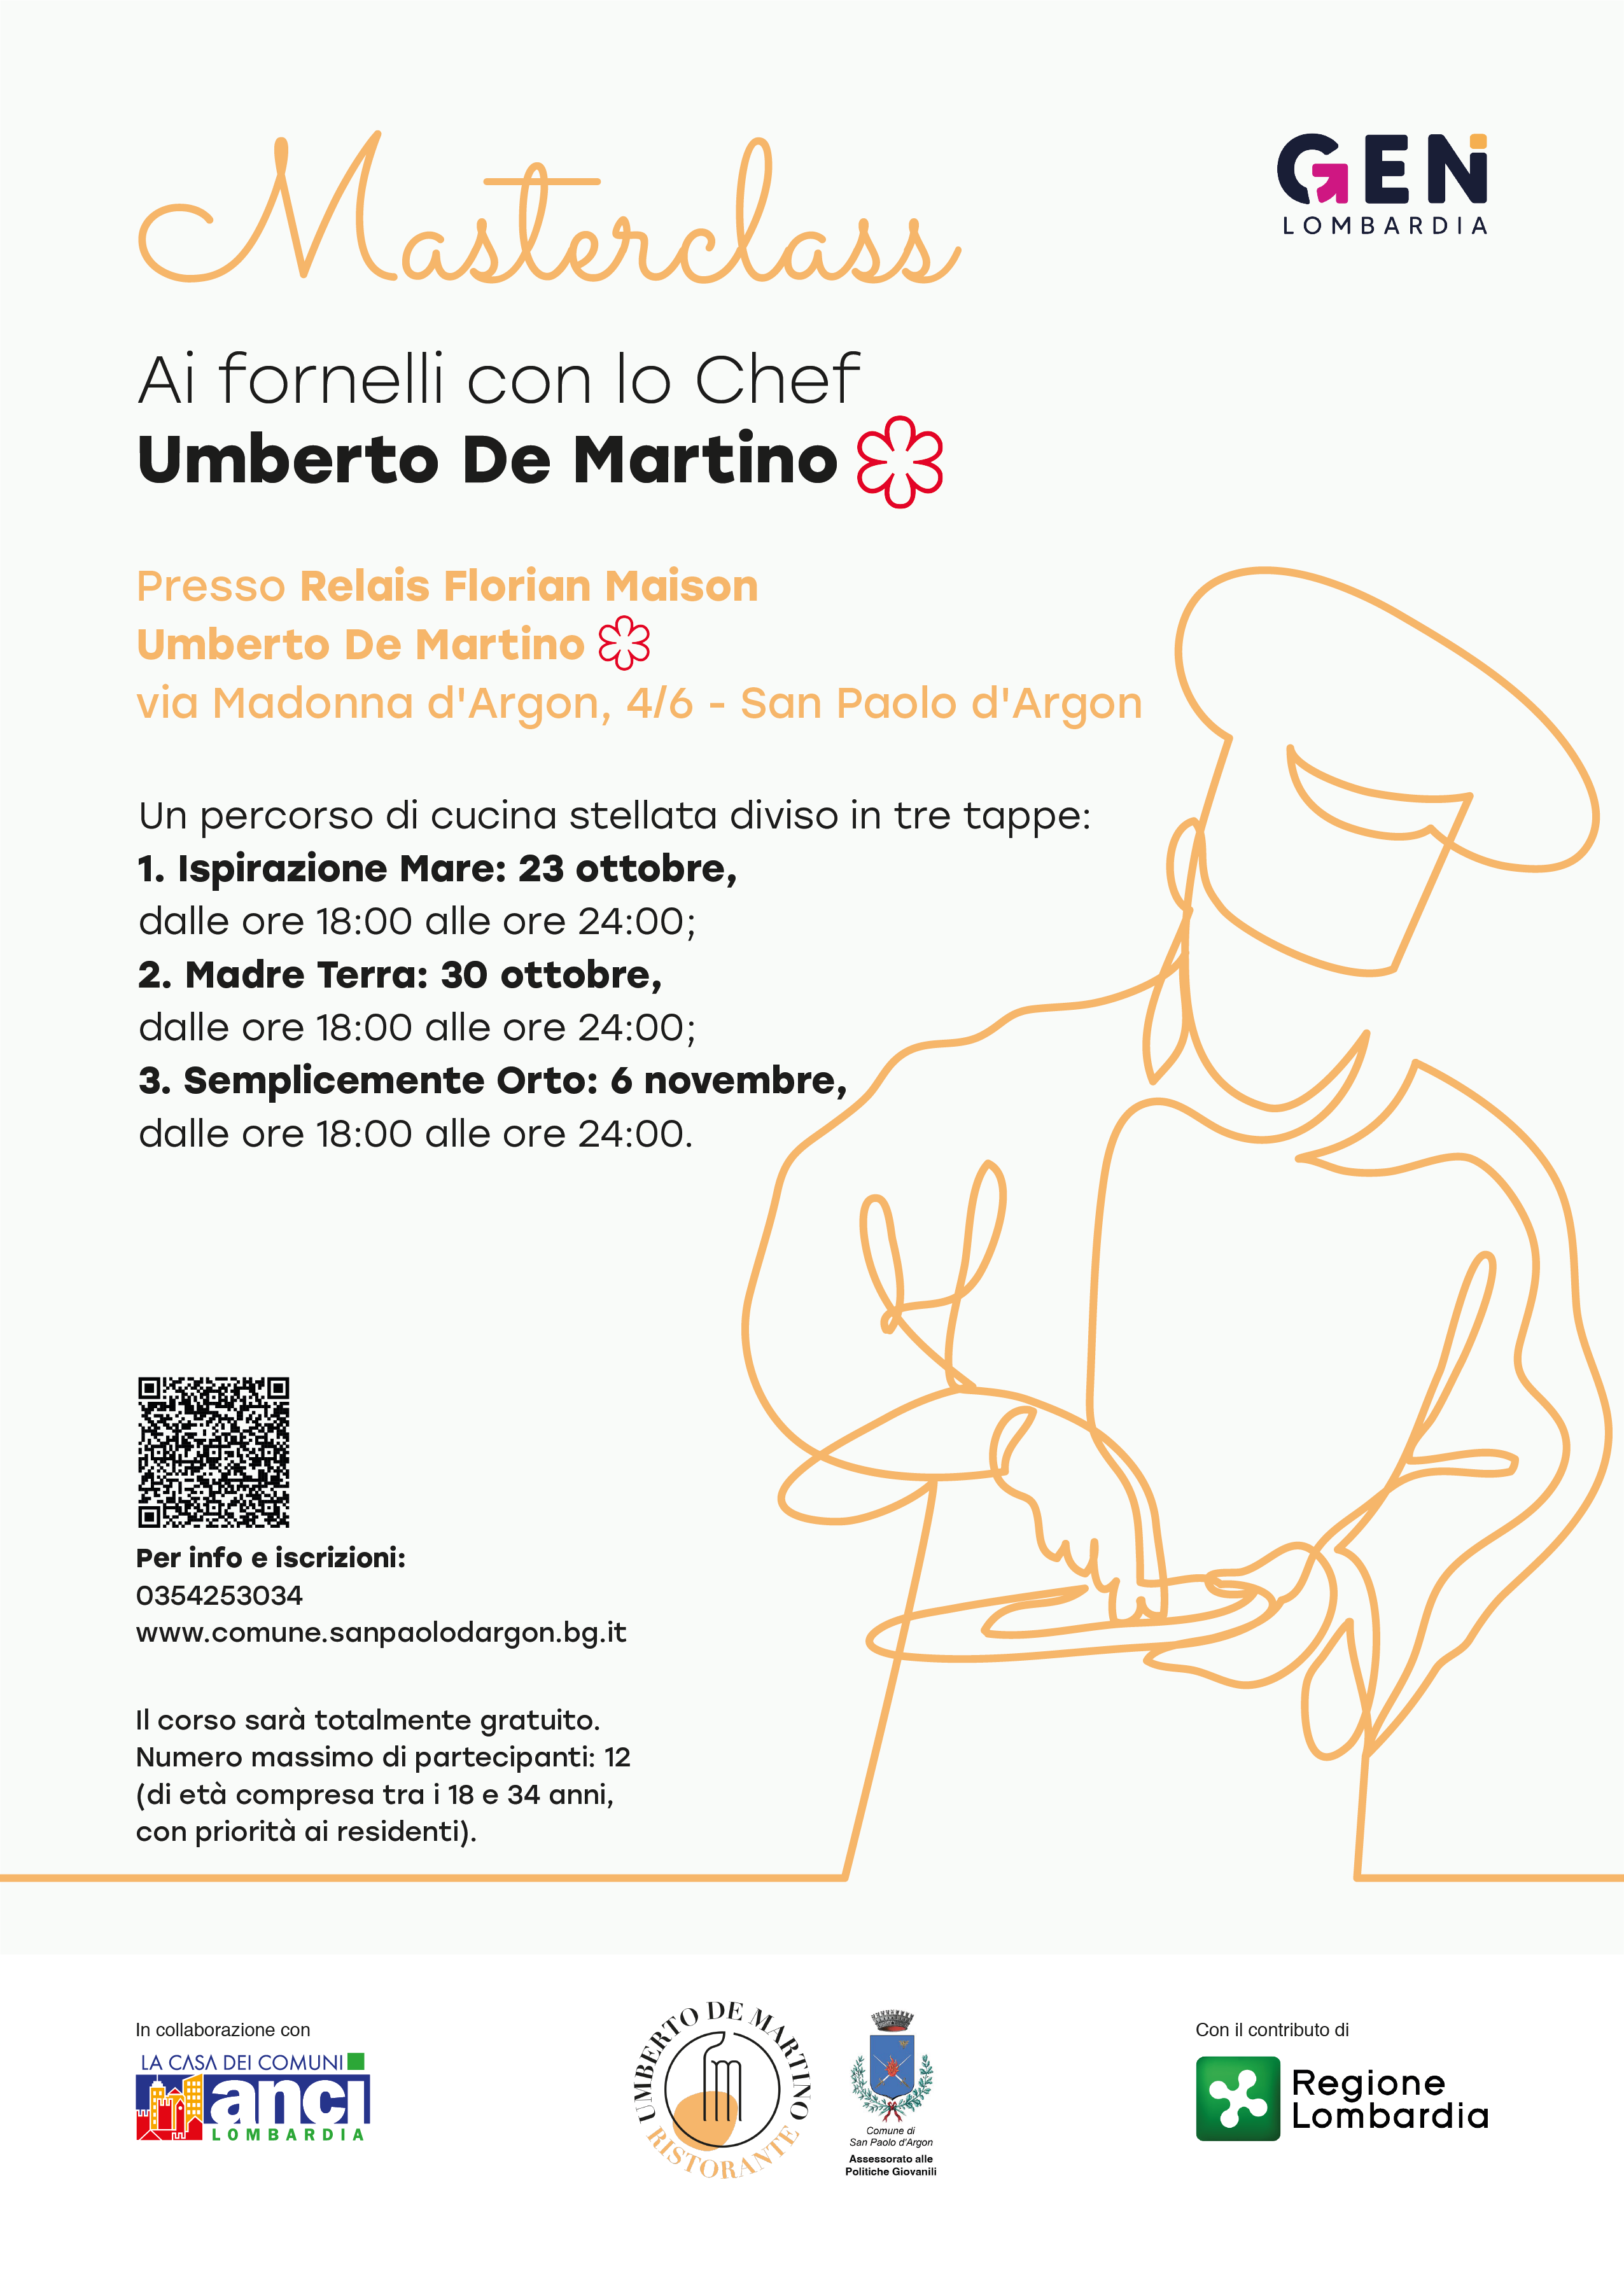 Immagine che raffigura Masterclass Chef Umberto De Martino